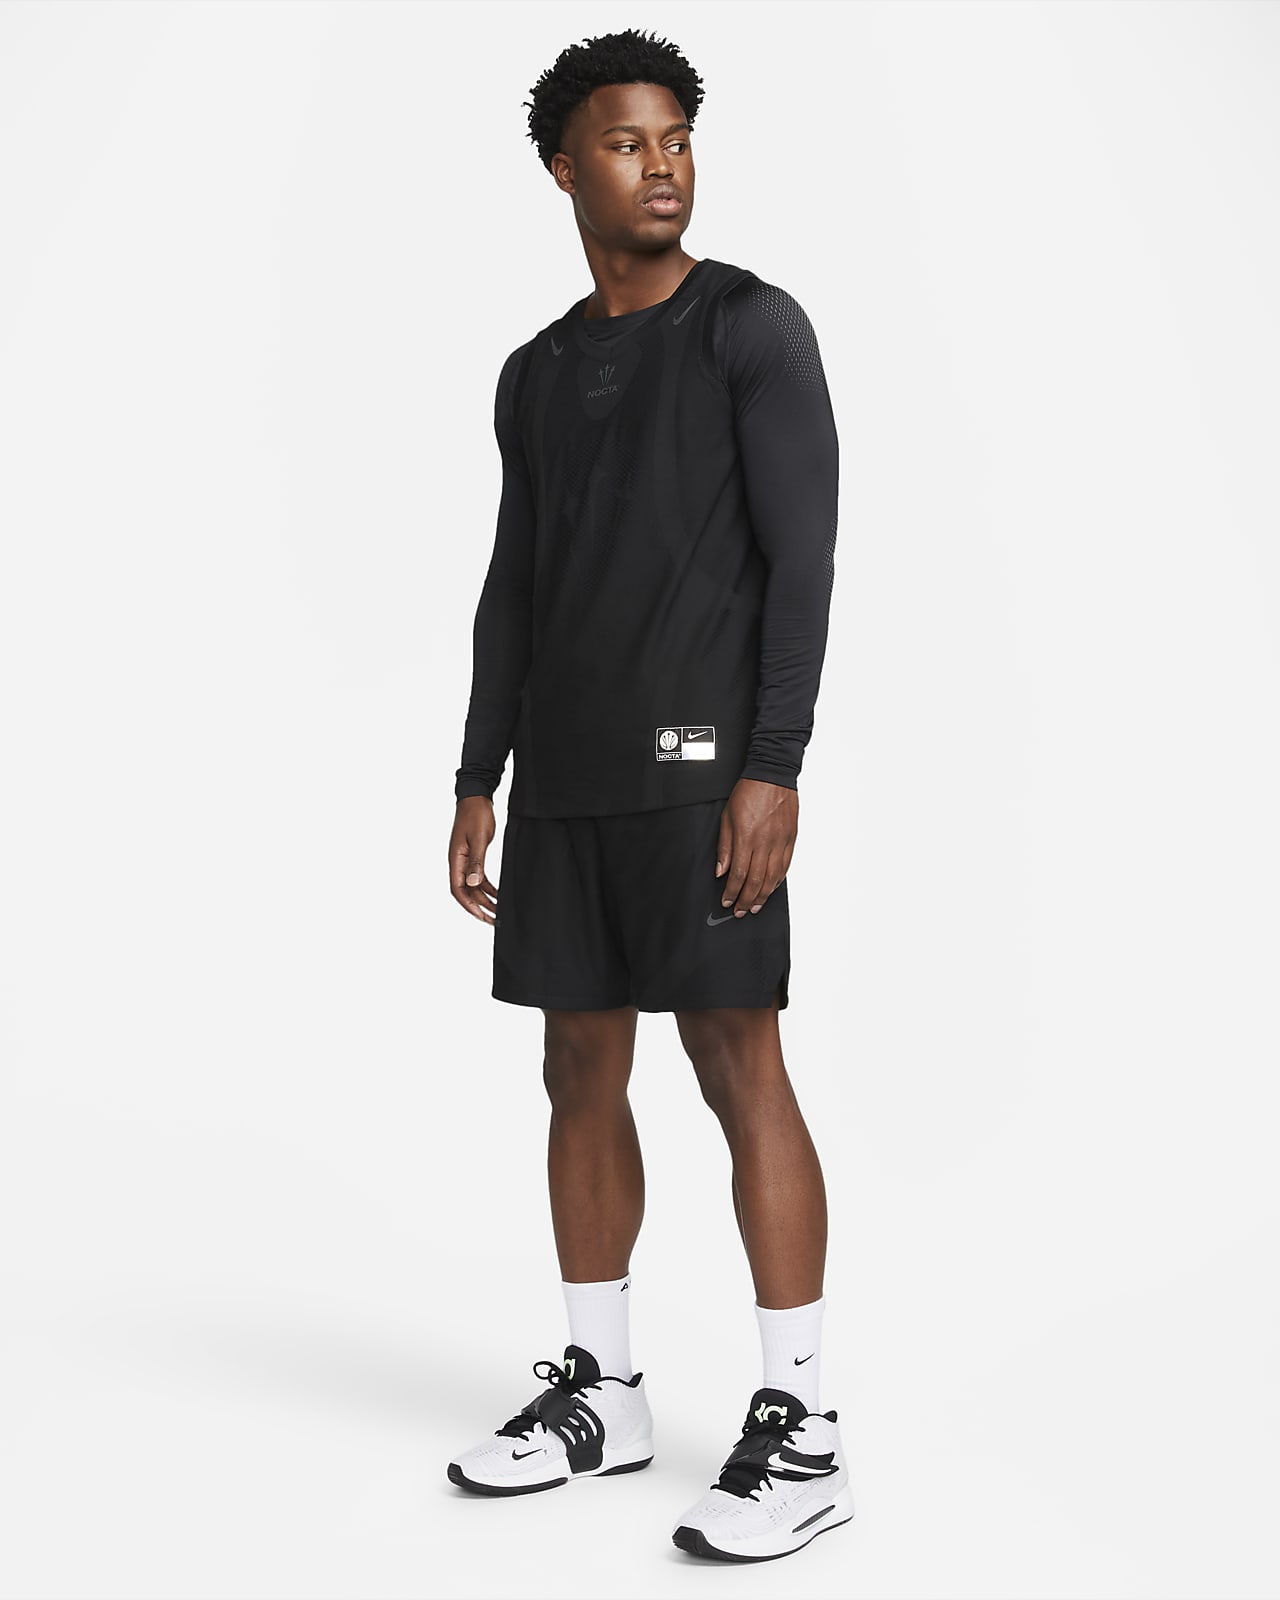 Capa base de básquetbol manga larga hombre NOCTA. Nike.com